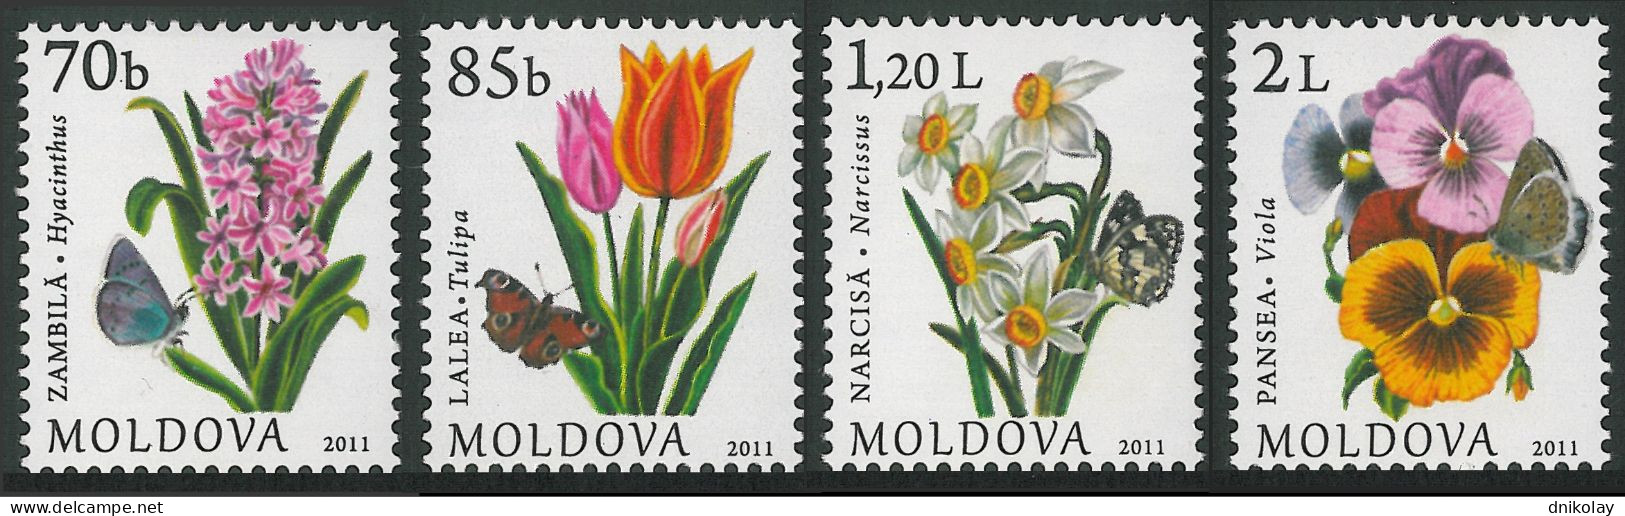 2011 757 Moldova The 575th Anniversary Of Kishinev MNH - Moldova